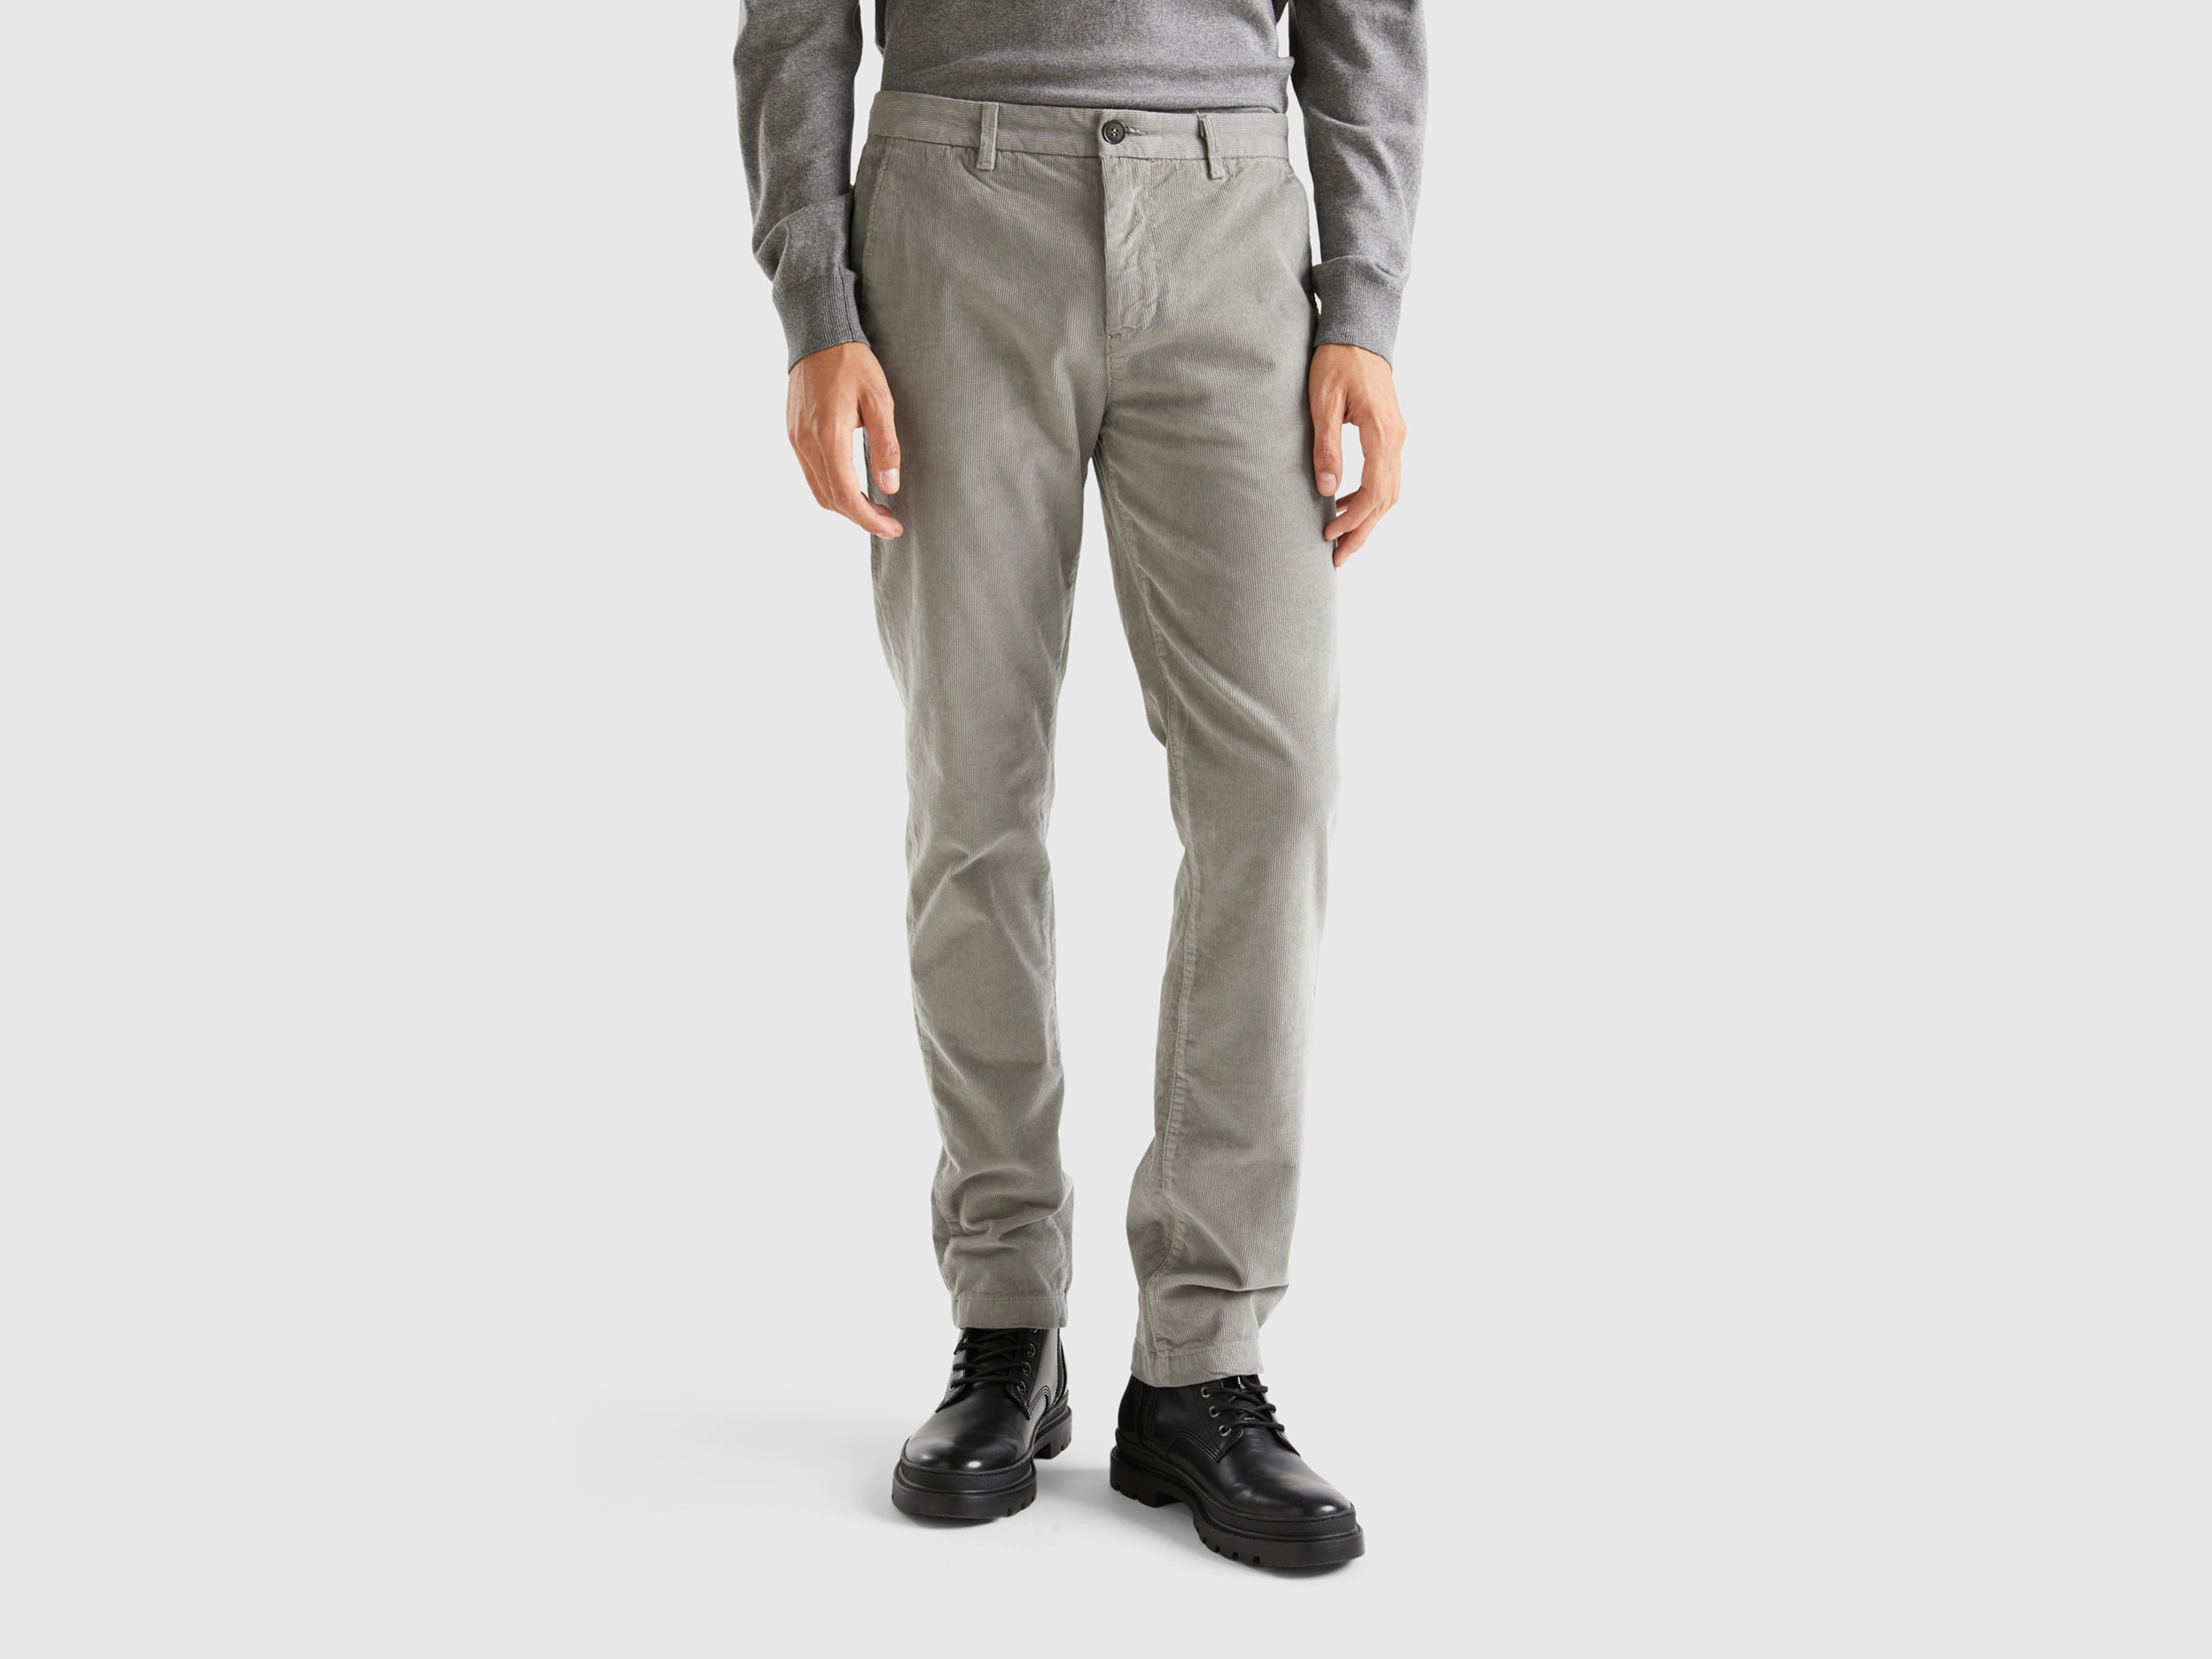 Benetton, Stretch Velvet Trousers, size 34, Light Gray, Men